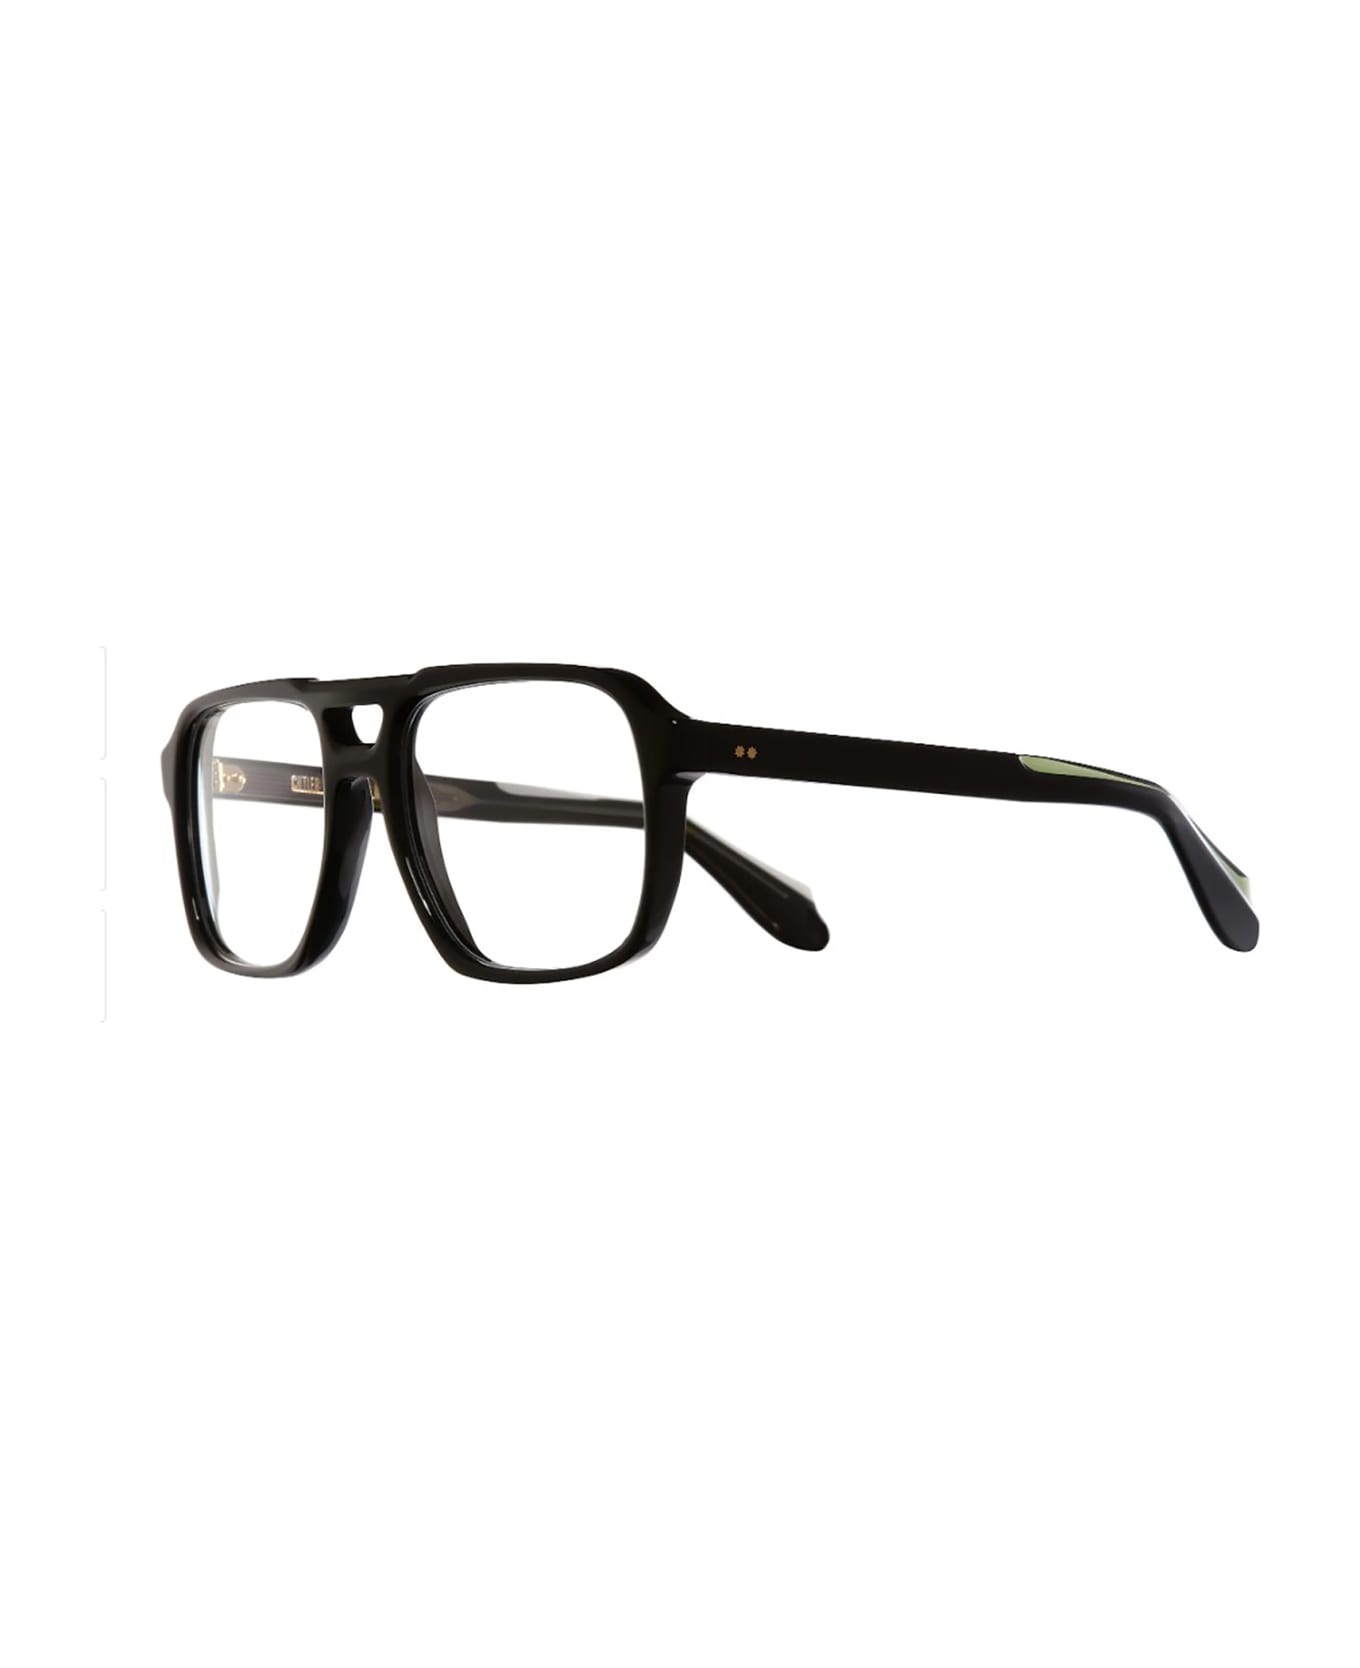 Cutler and Gross 1394(VISTA) Eyewear - Black